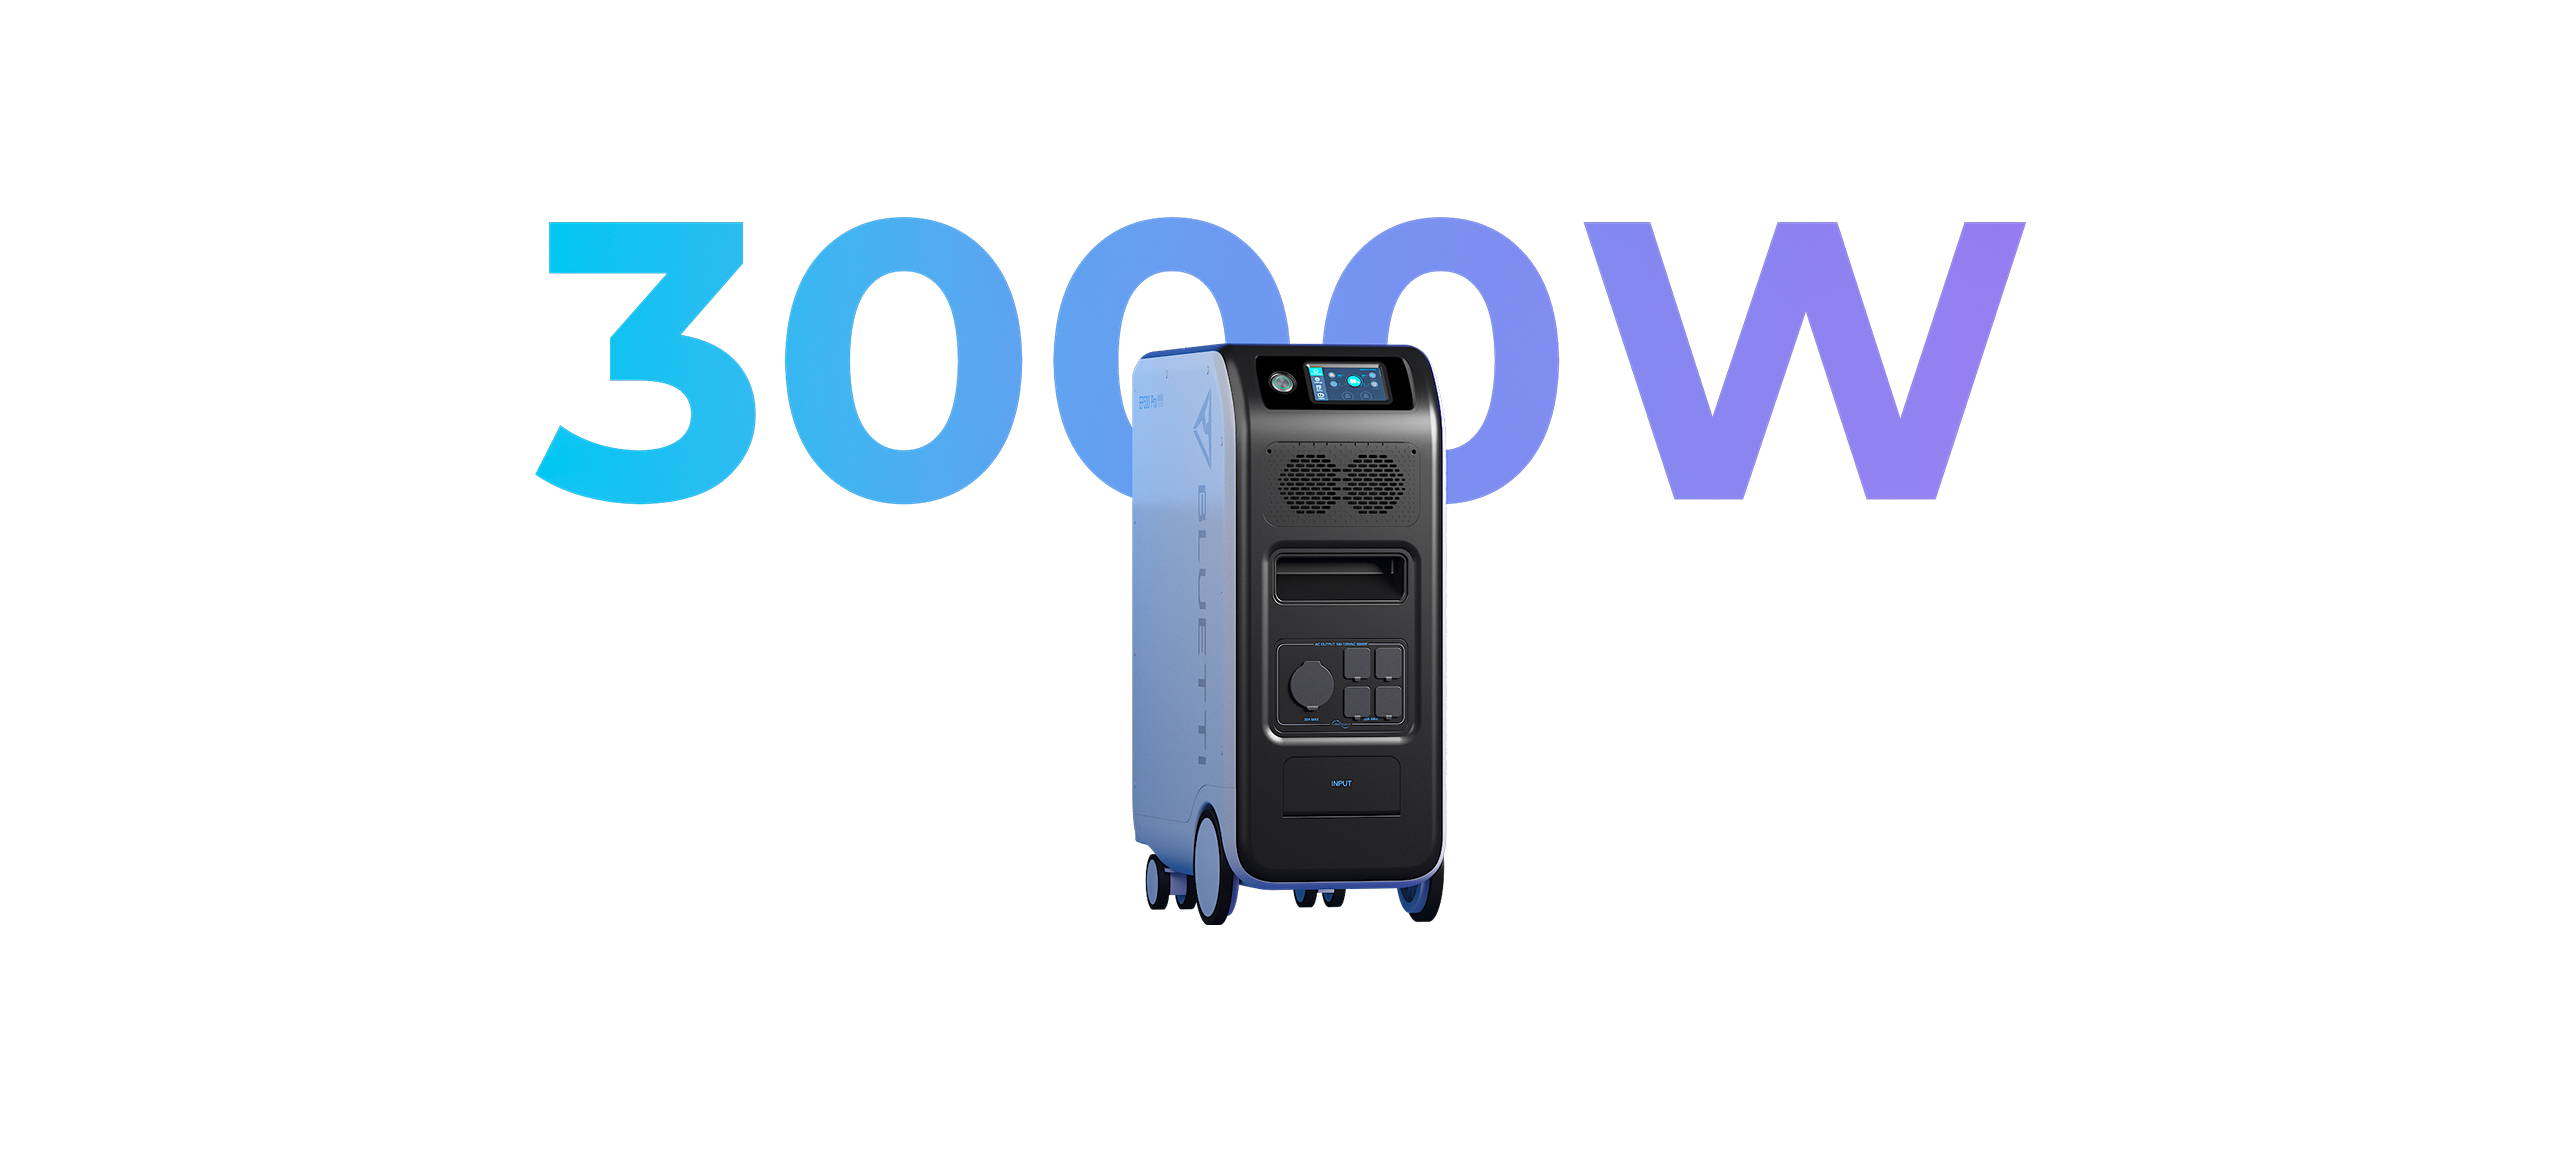 Bluetti EP500 Pro im Check - Powerstation mit 5kWh und 3000 Watt